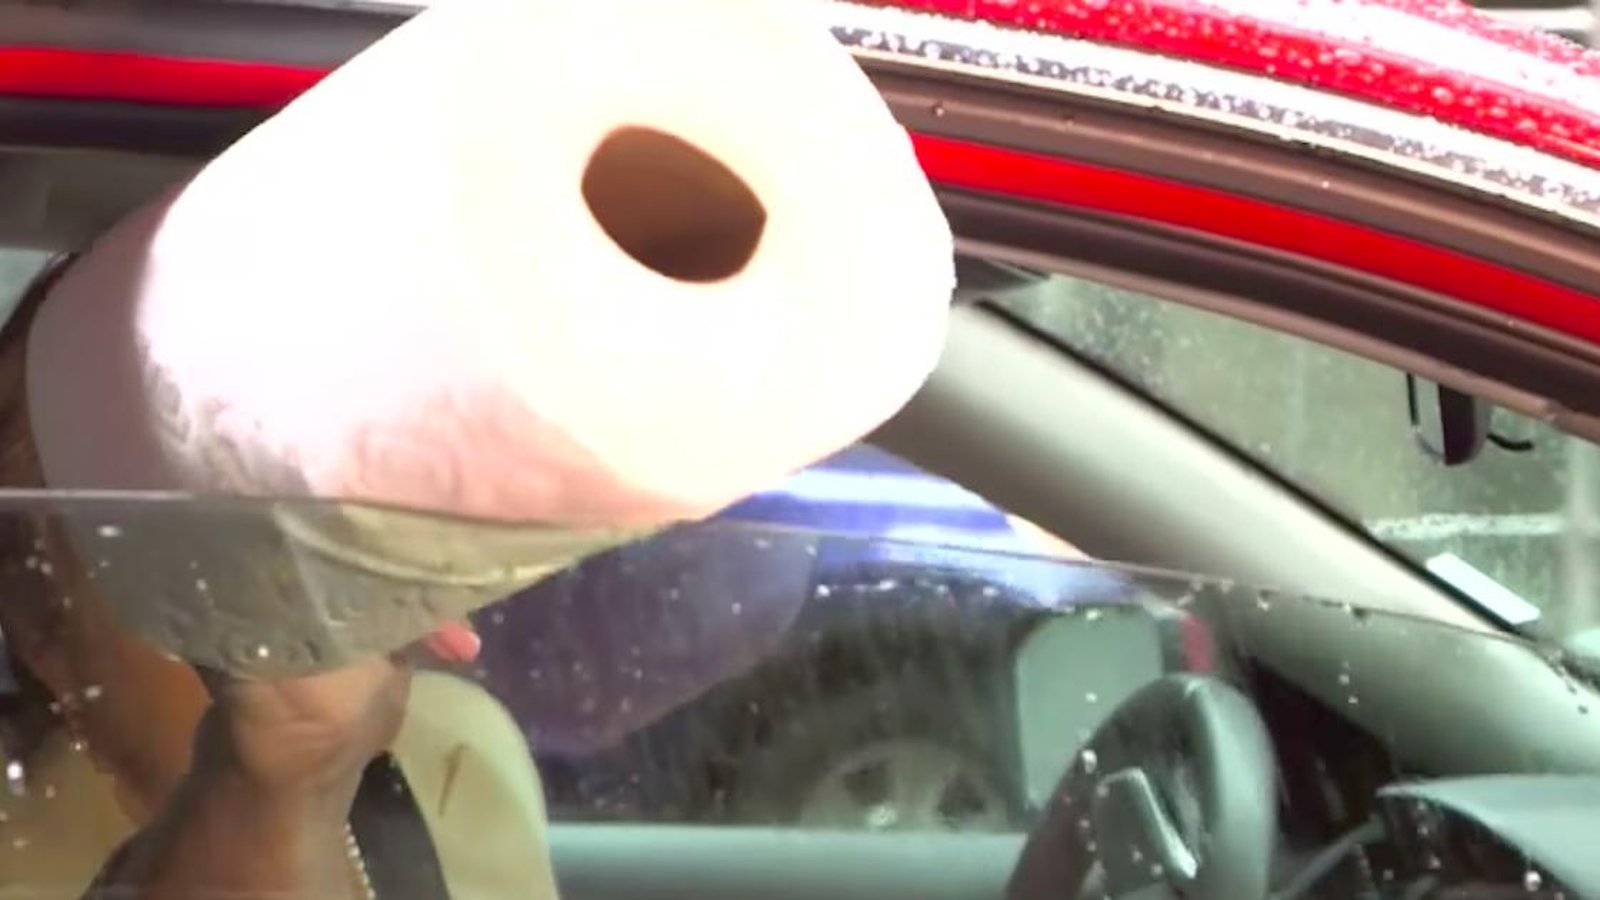 Elle sort un rouleau de papier essuie-tout par la fenêtre de sa voiture afin de nous montrer un truc qui pourrait nous sauver la vie